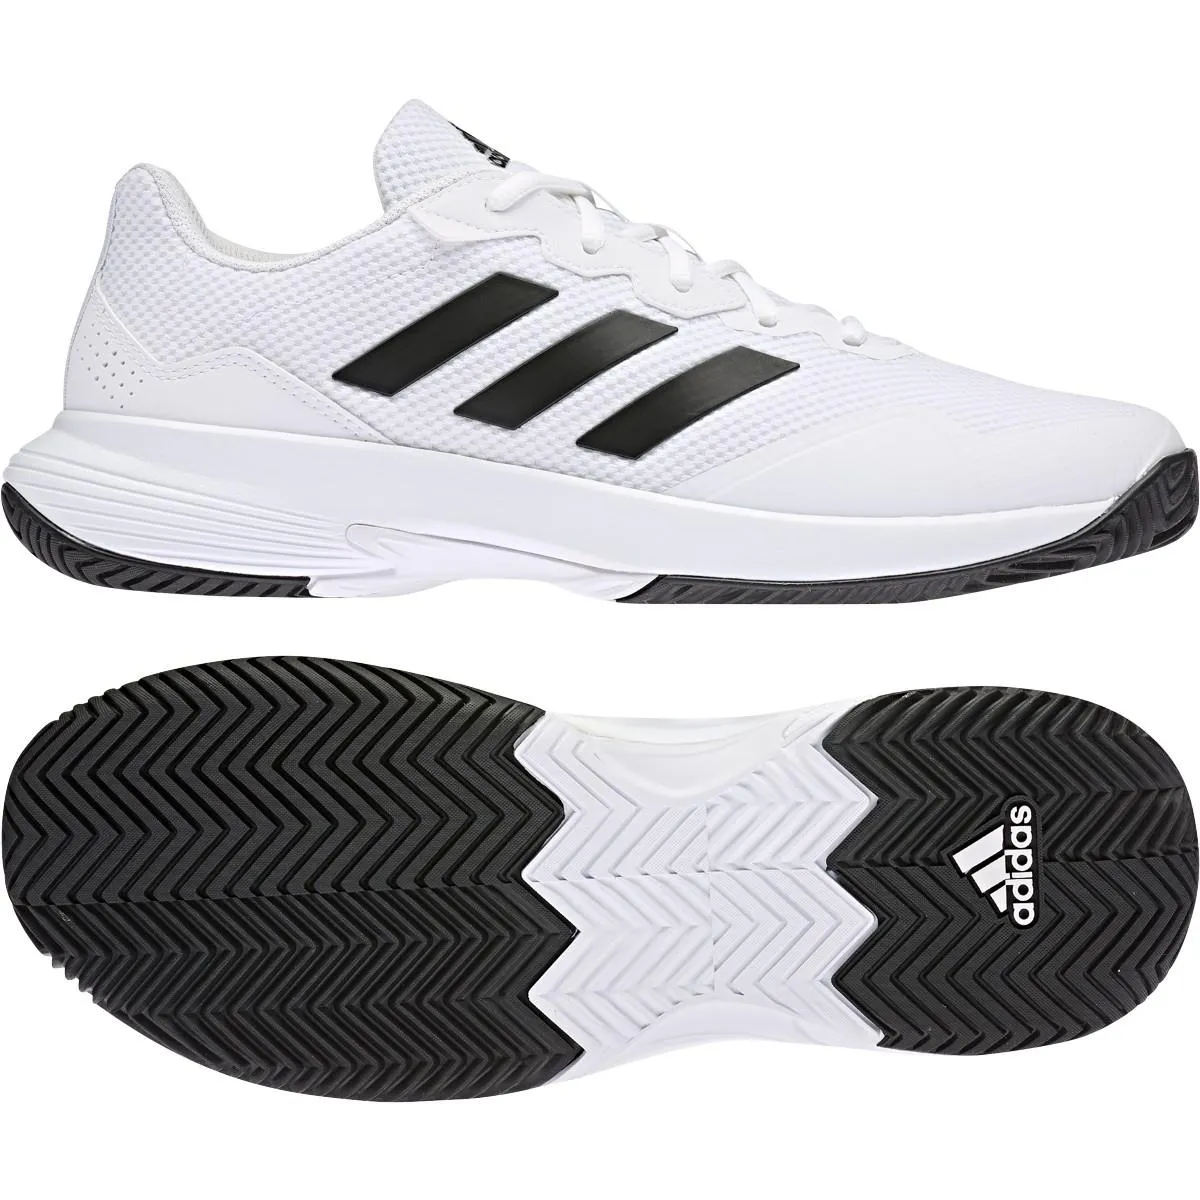 E184970 Adidas Gamecourt 2 Men's Tennis Shoes